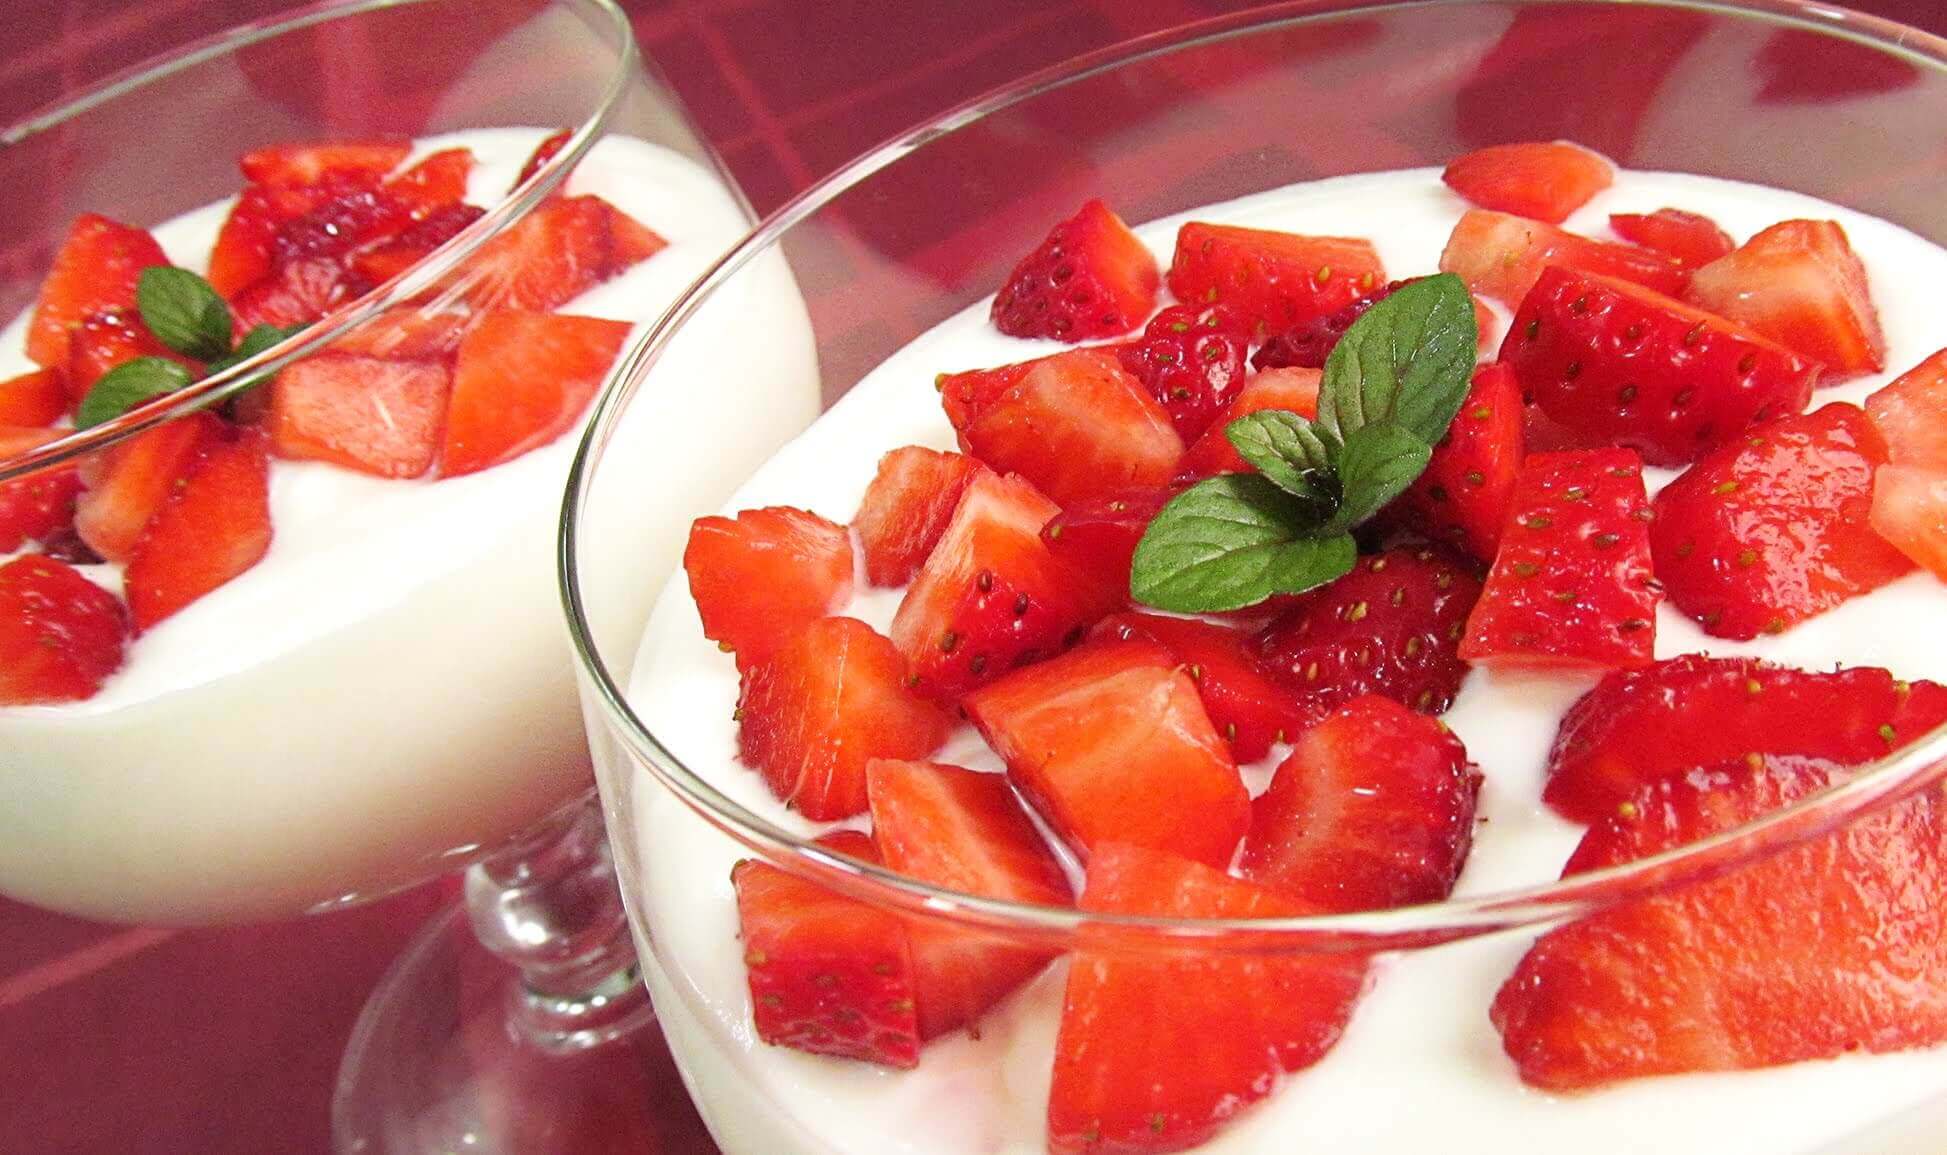 Jordbær med yoghurt er eksempel på morgenmad baseret på frugt